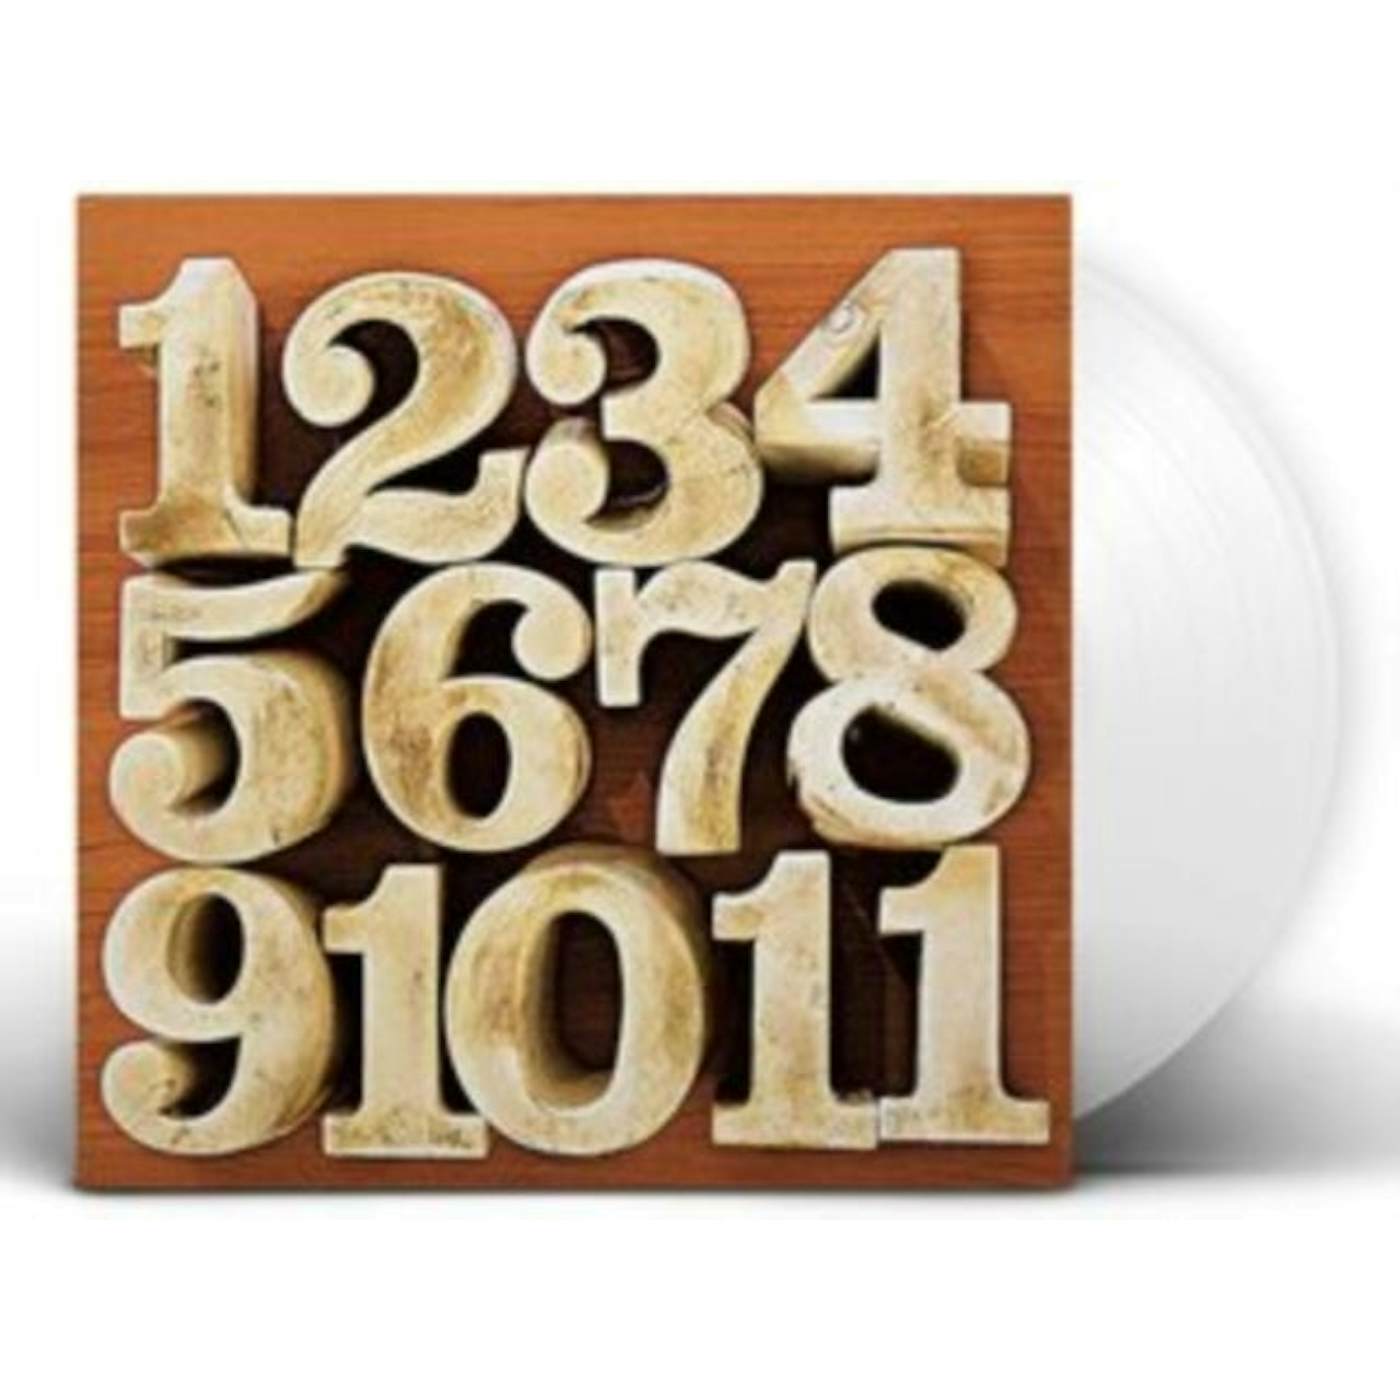 La Buena Vida LP Vinyl Record - Album (White Vinyl)